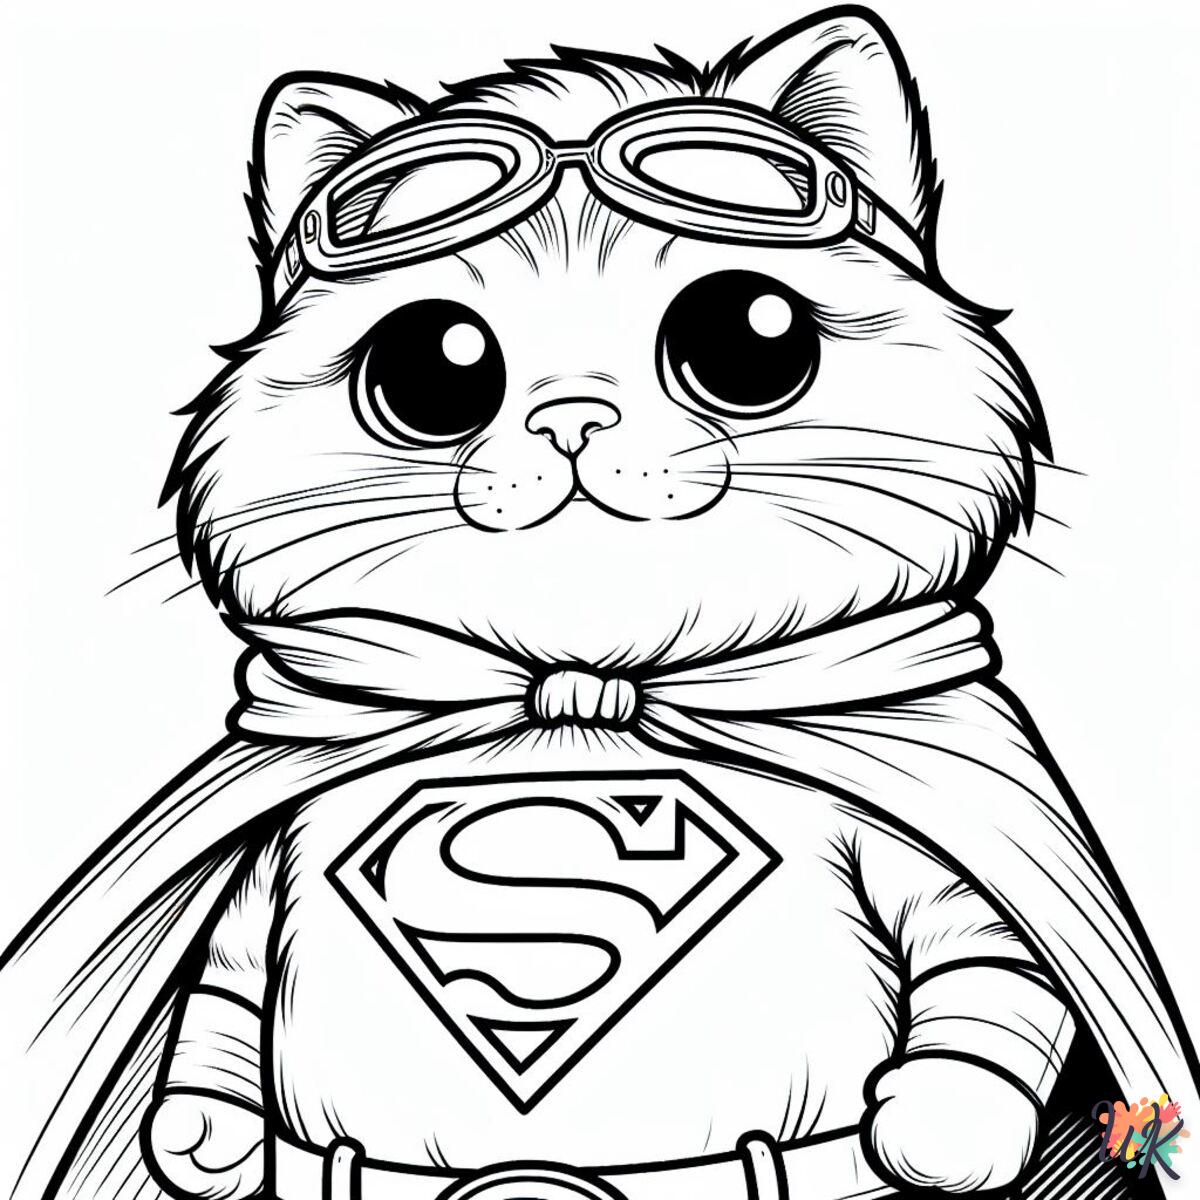 Des pages à colorier étonnantes avec des chats super-héros